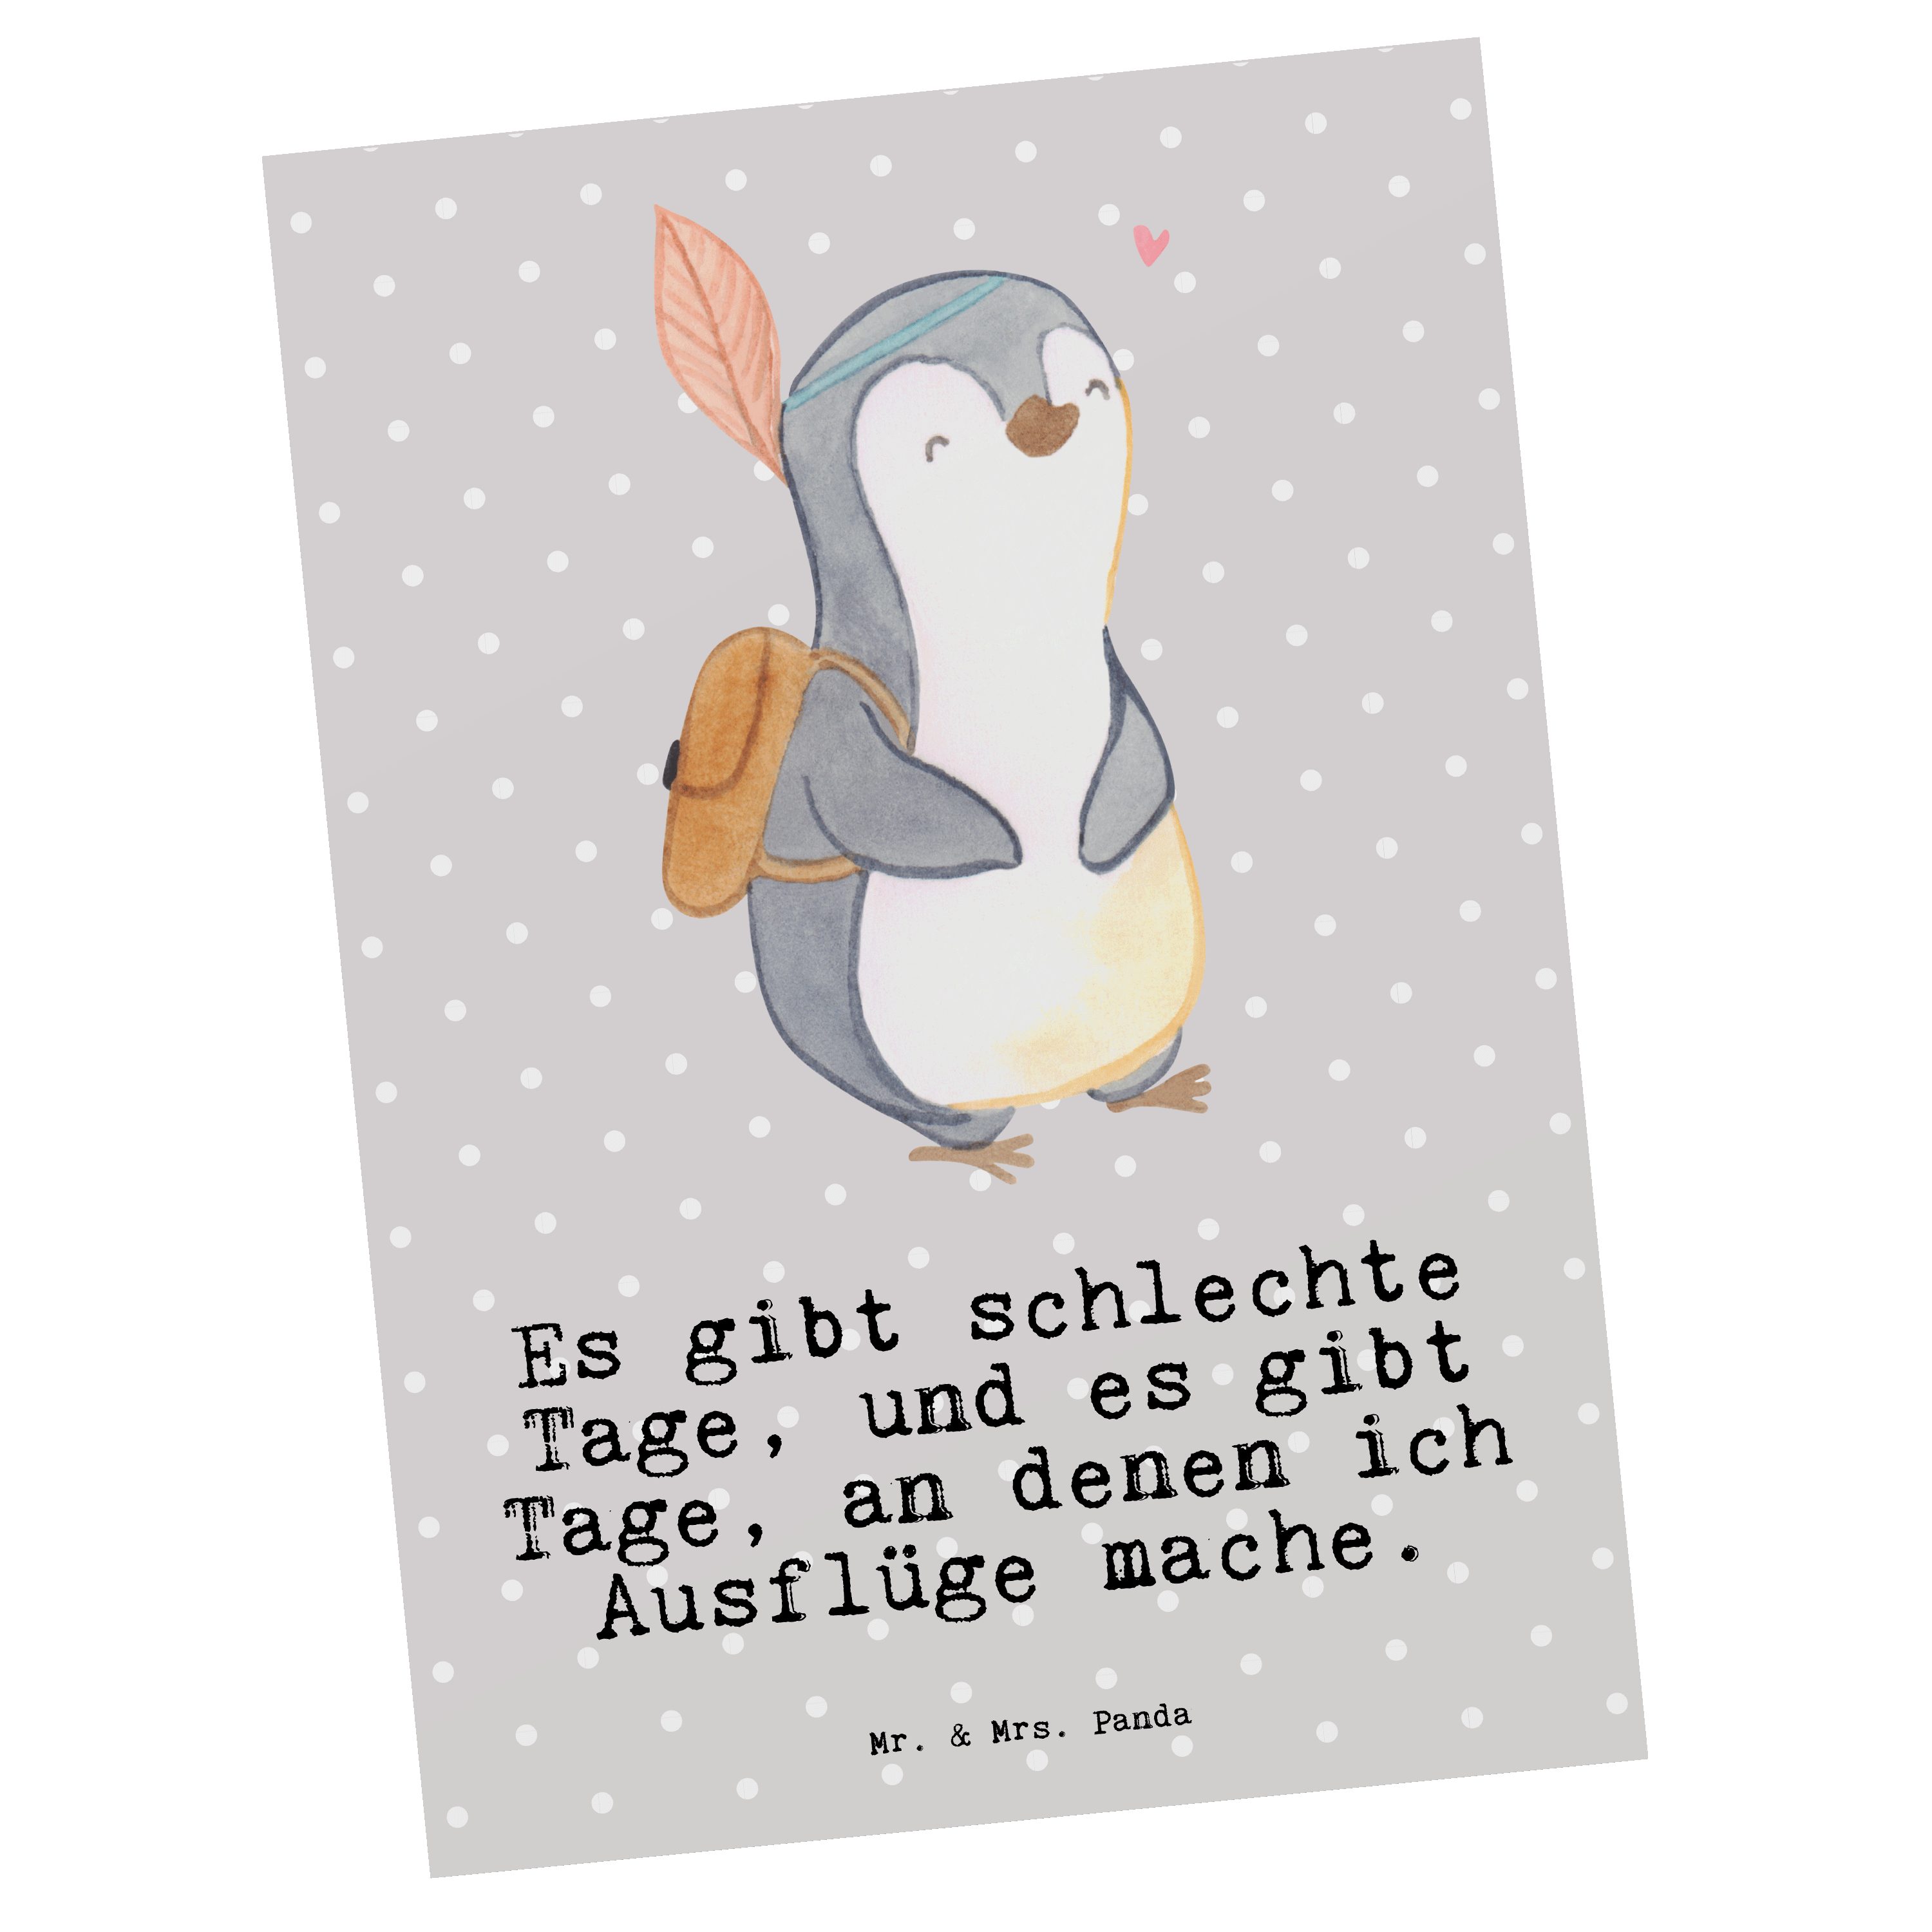 Mr. & Mrs. Panda Postkarte Pinguin Ausflug Tage - Grau Pastell - Geschenk, Einladung, reisen, Sp